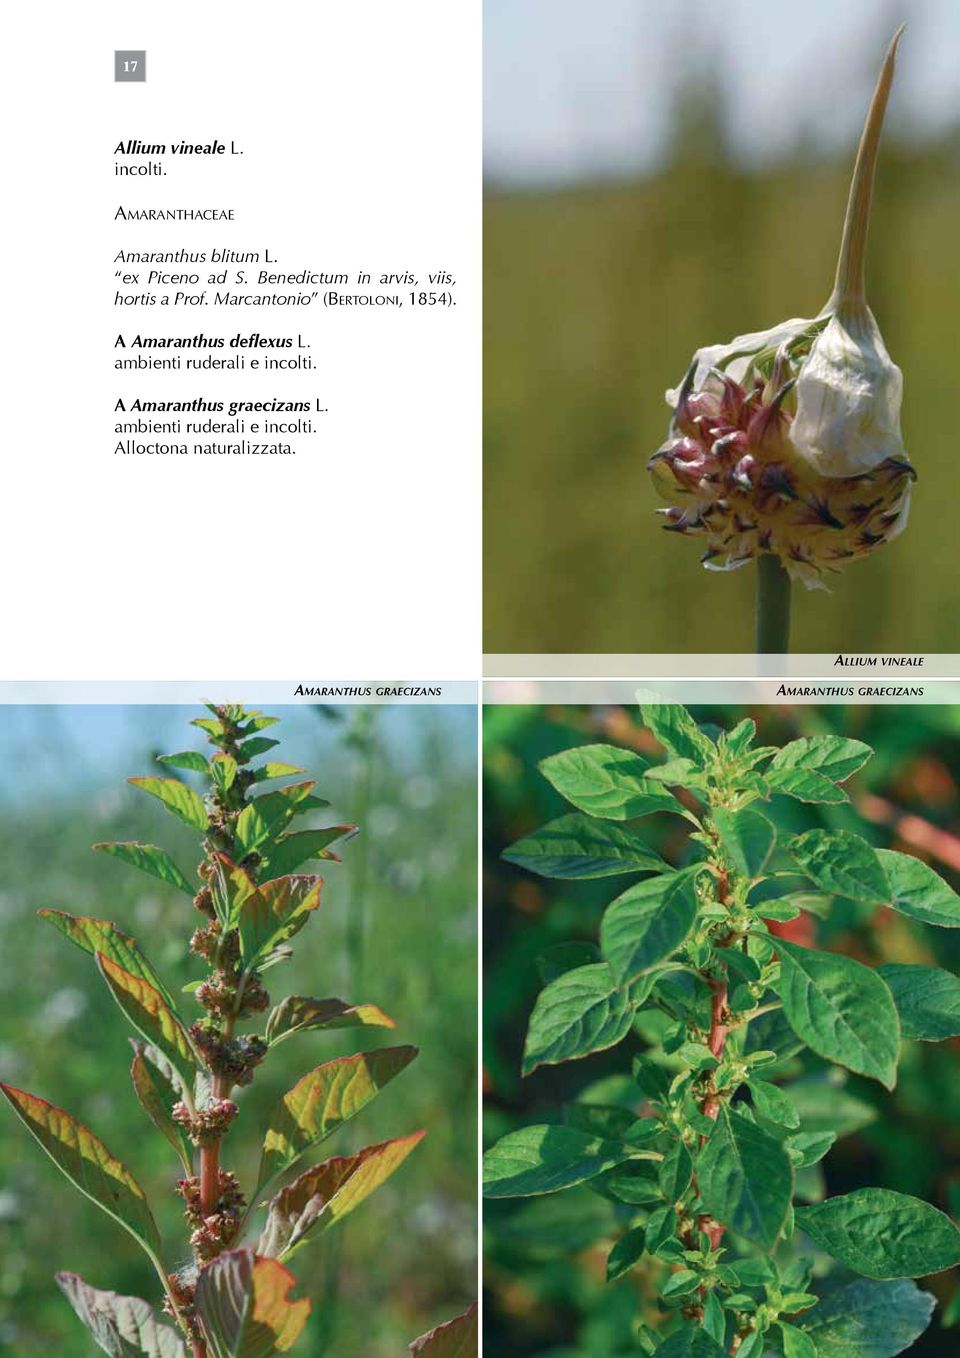 A Amaranthus deflexus L. ambienti ruderali e incolti. A Amaranthus graecizans L.